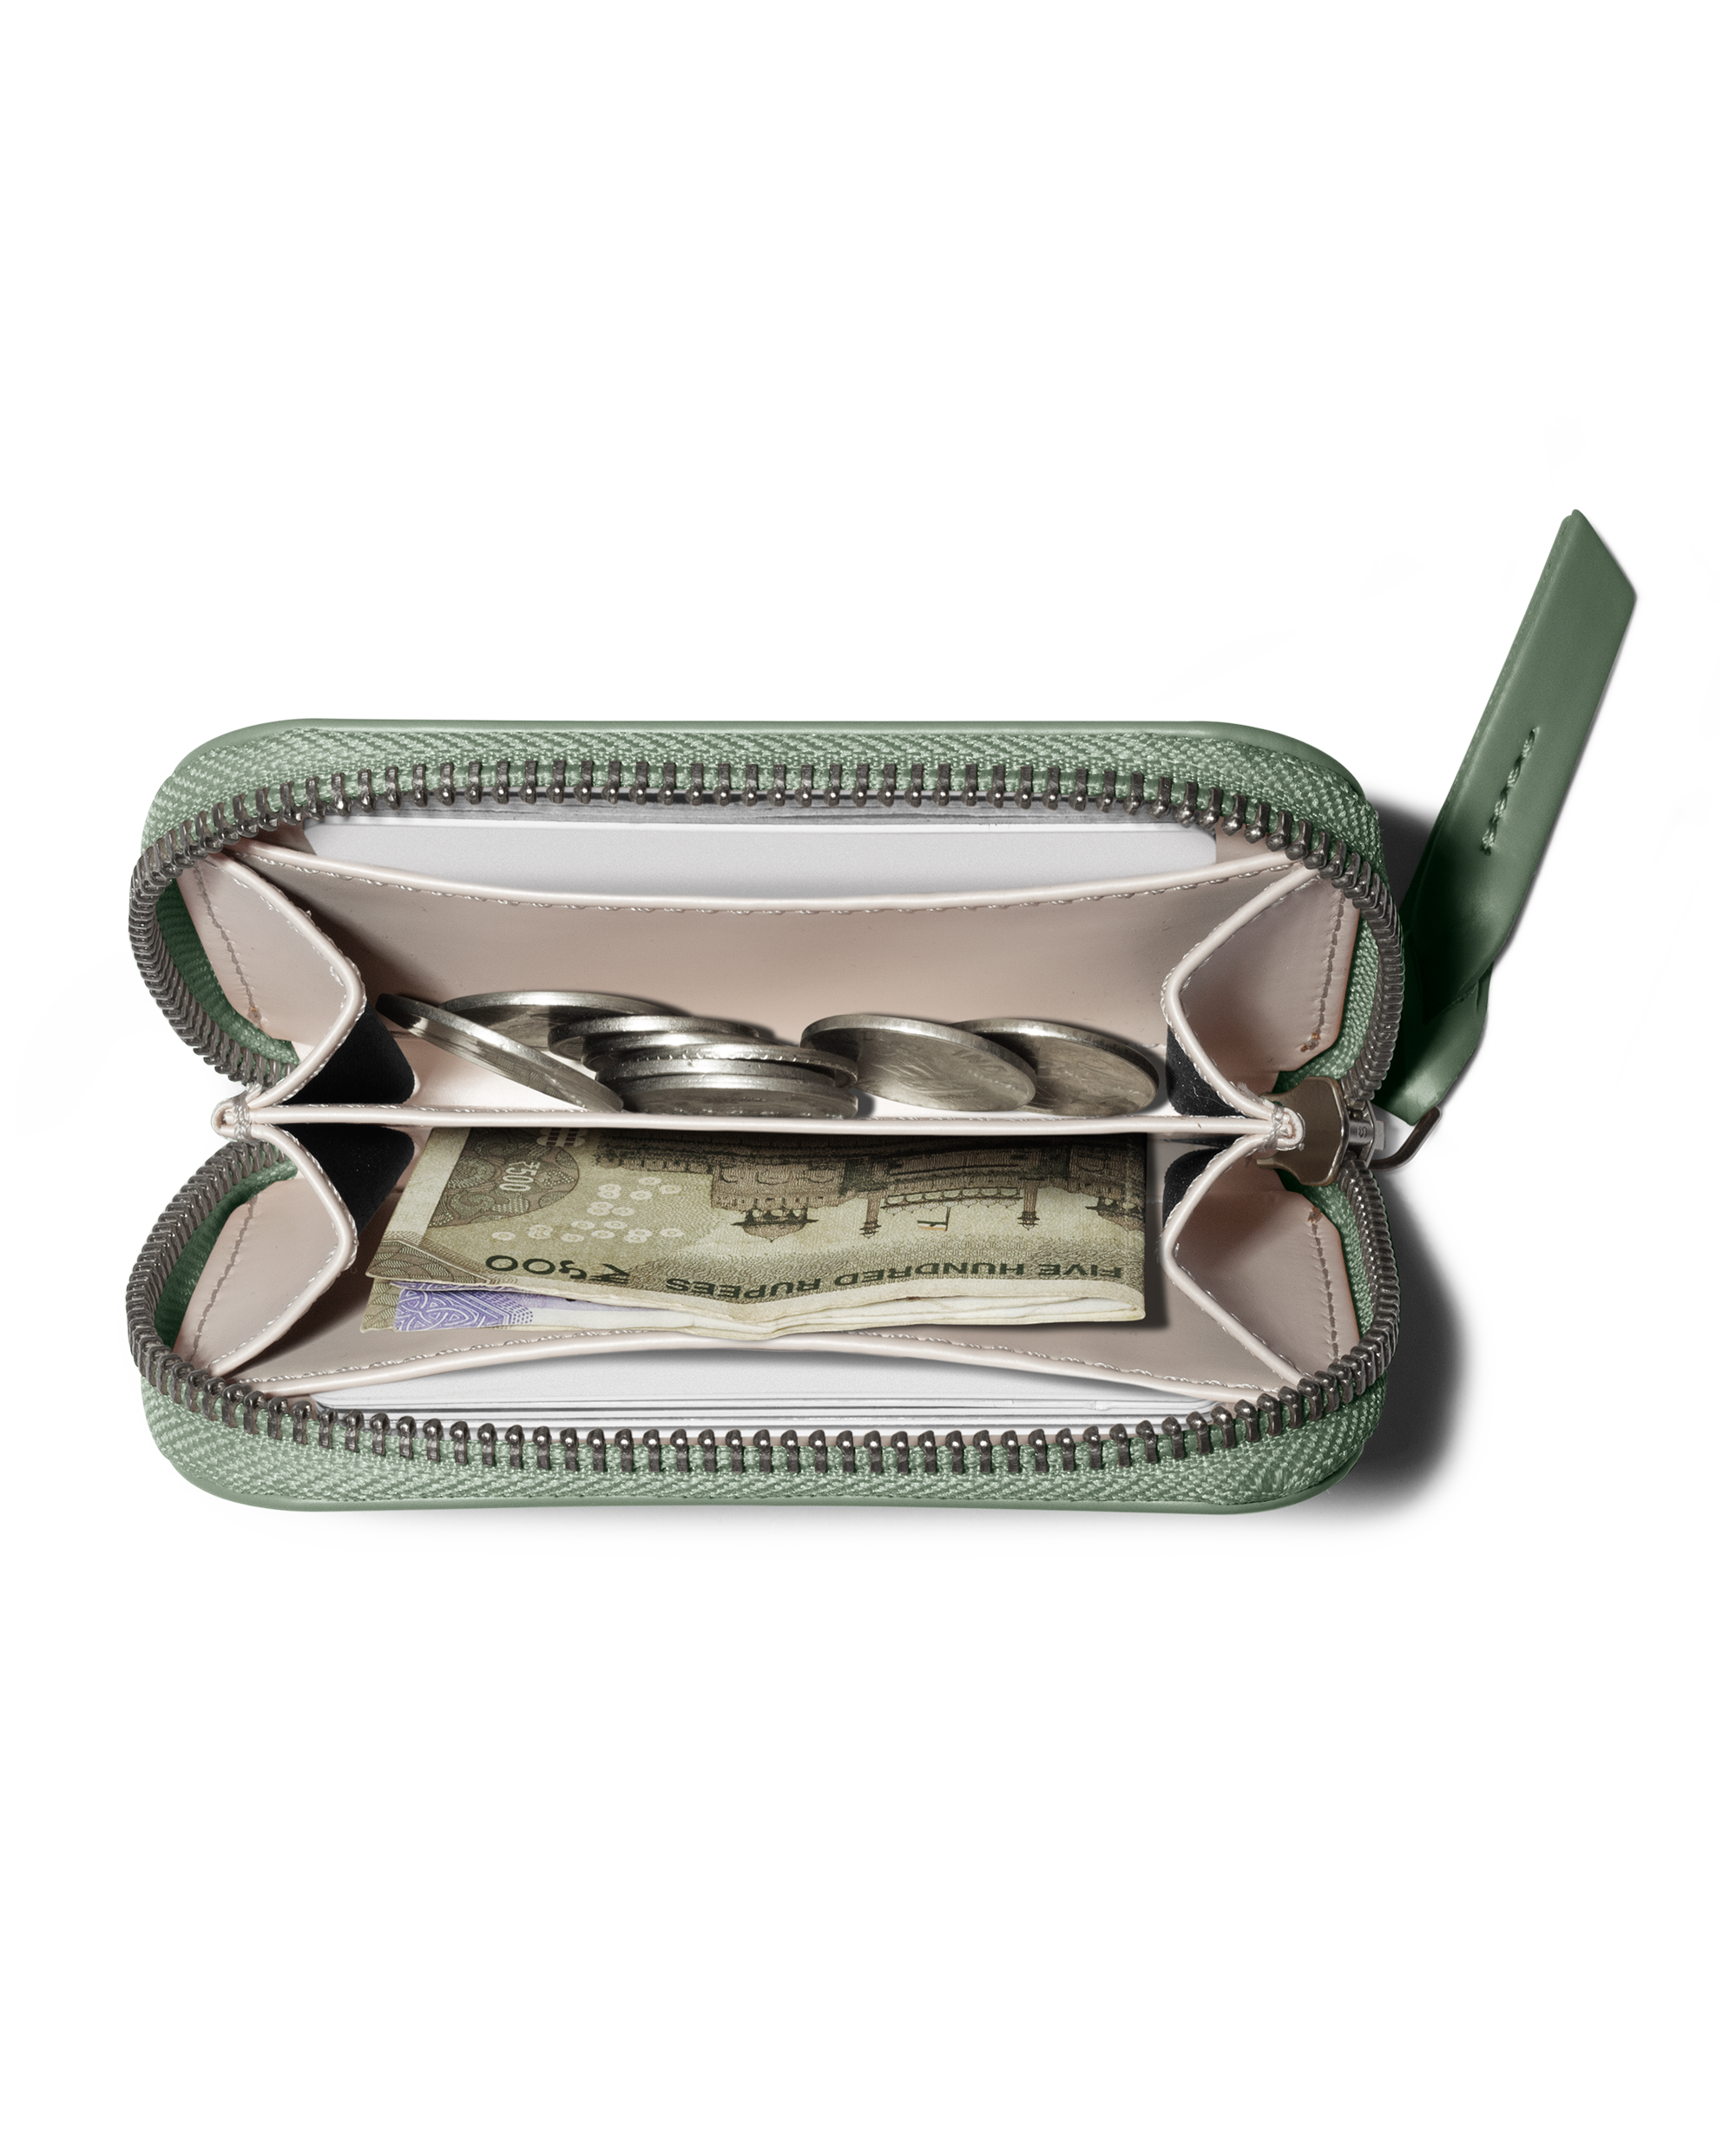 Versace Men's Neon Green Leather Medusa Zip Around Bifold Wallet | eBay